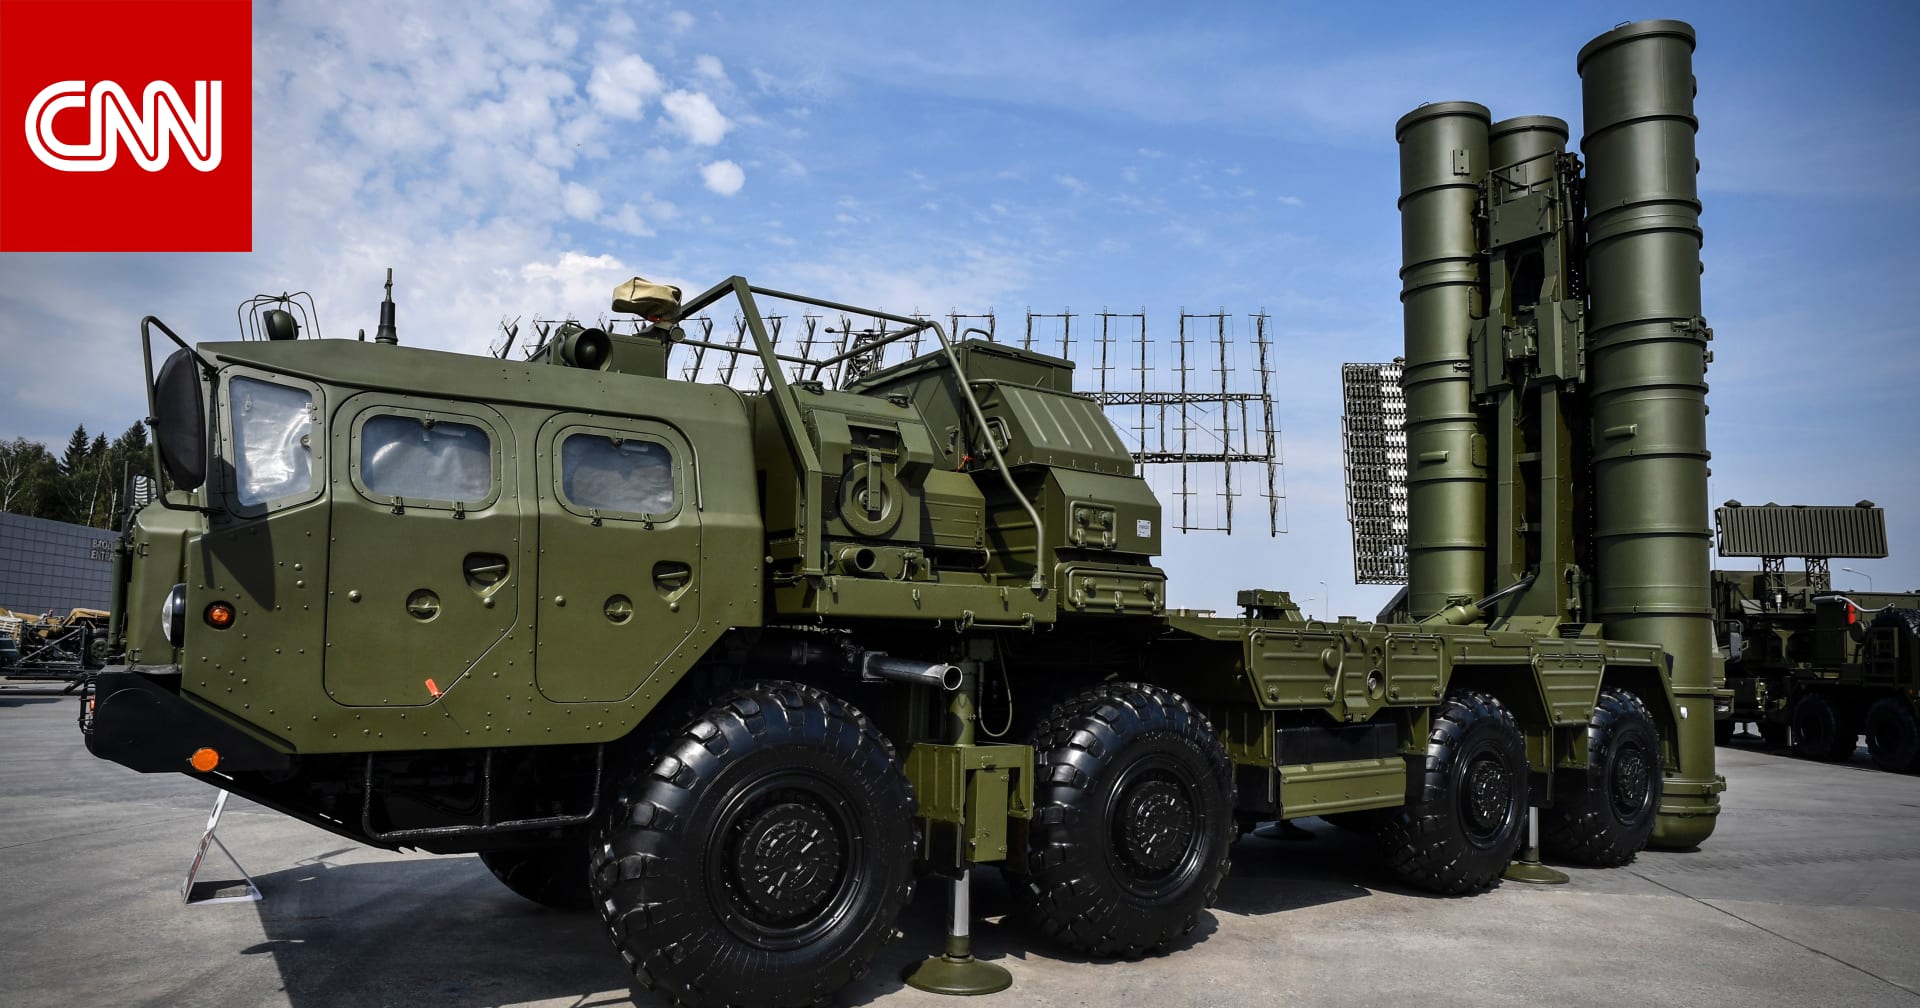 تركيا تعلن بدء تشغيل نظام الصواريخ الروسية S-400 اعتبارًا من أبريل 2020 - CNN Arabic